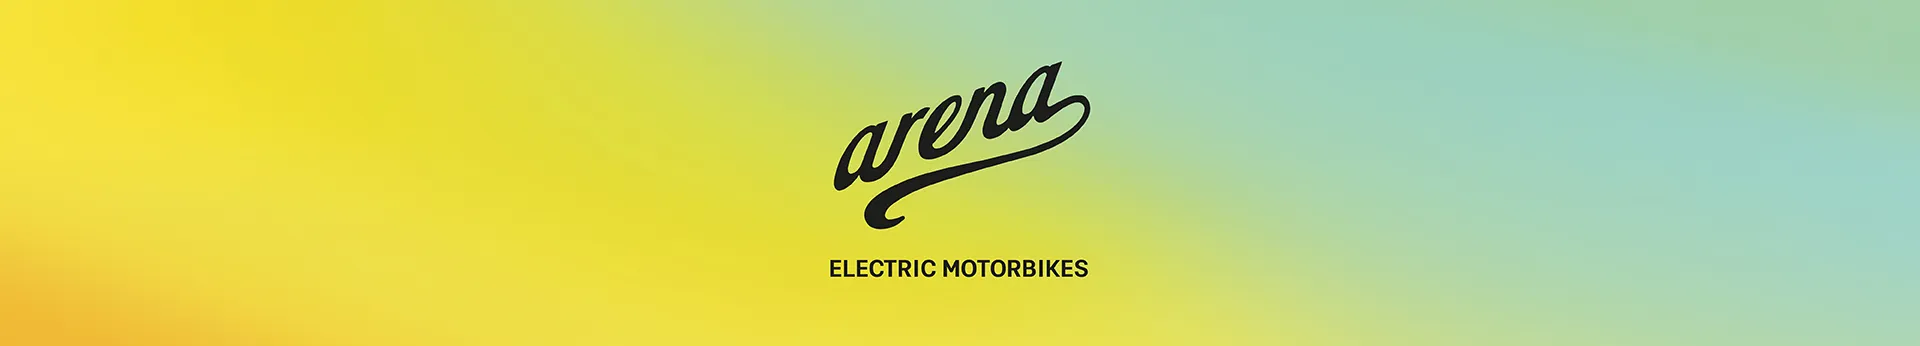 Arena Motos Eléctricas